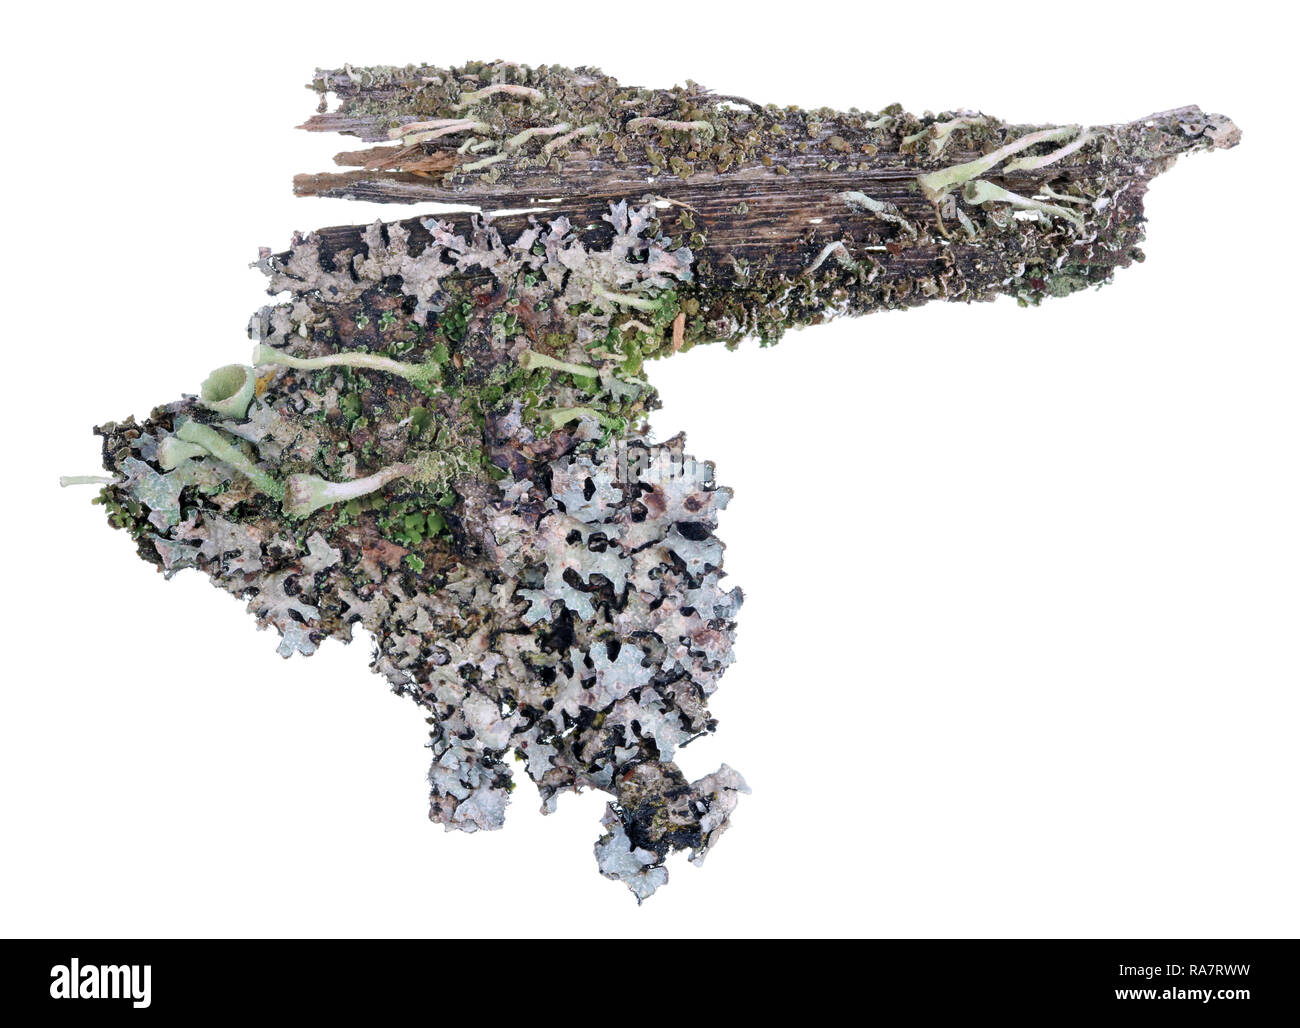 Frammento di naturale della foresta europea blue moss lichen piante di pino sulla corteccia di albero. Ione Isolato bianco macro studio shot Foto Stock